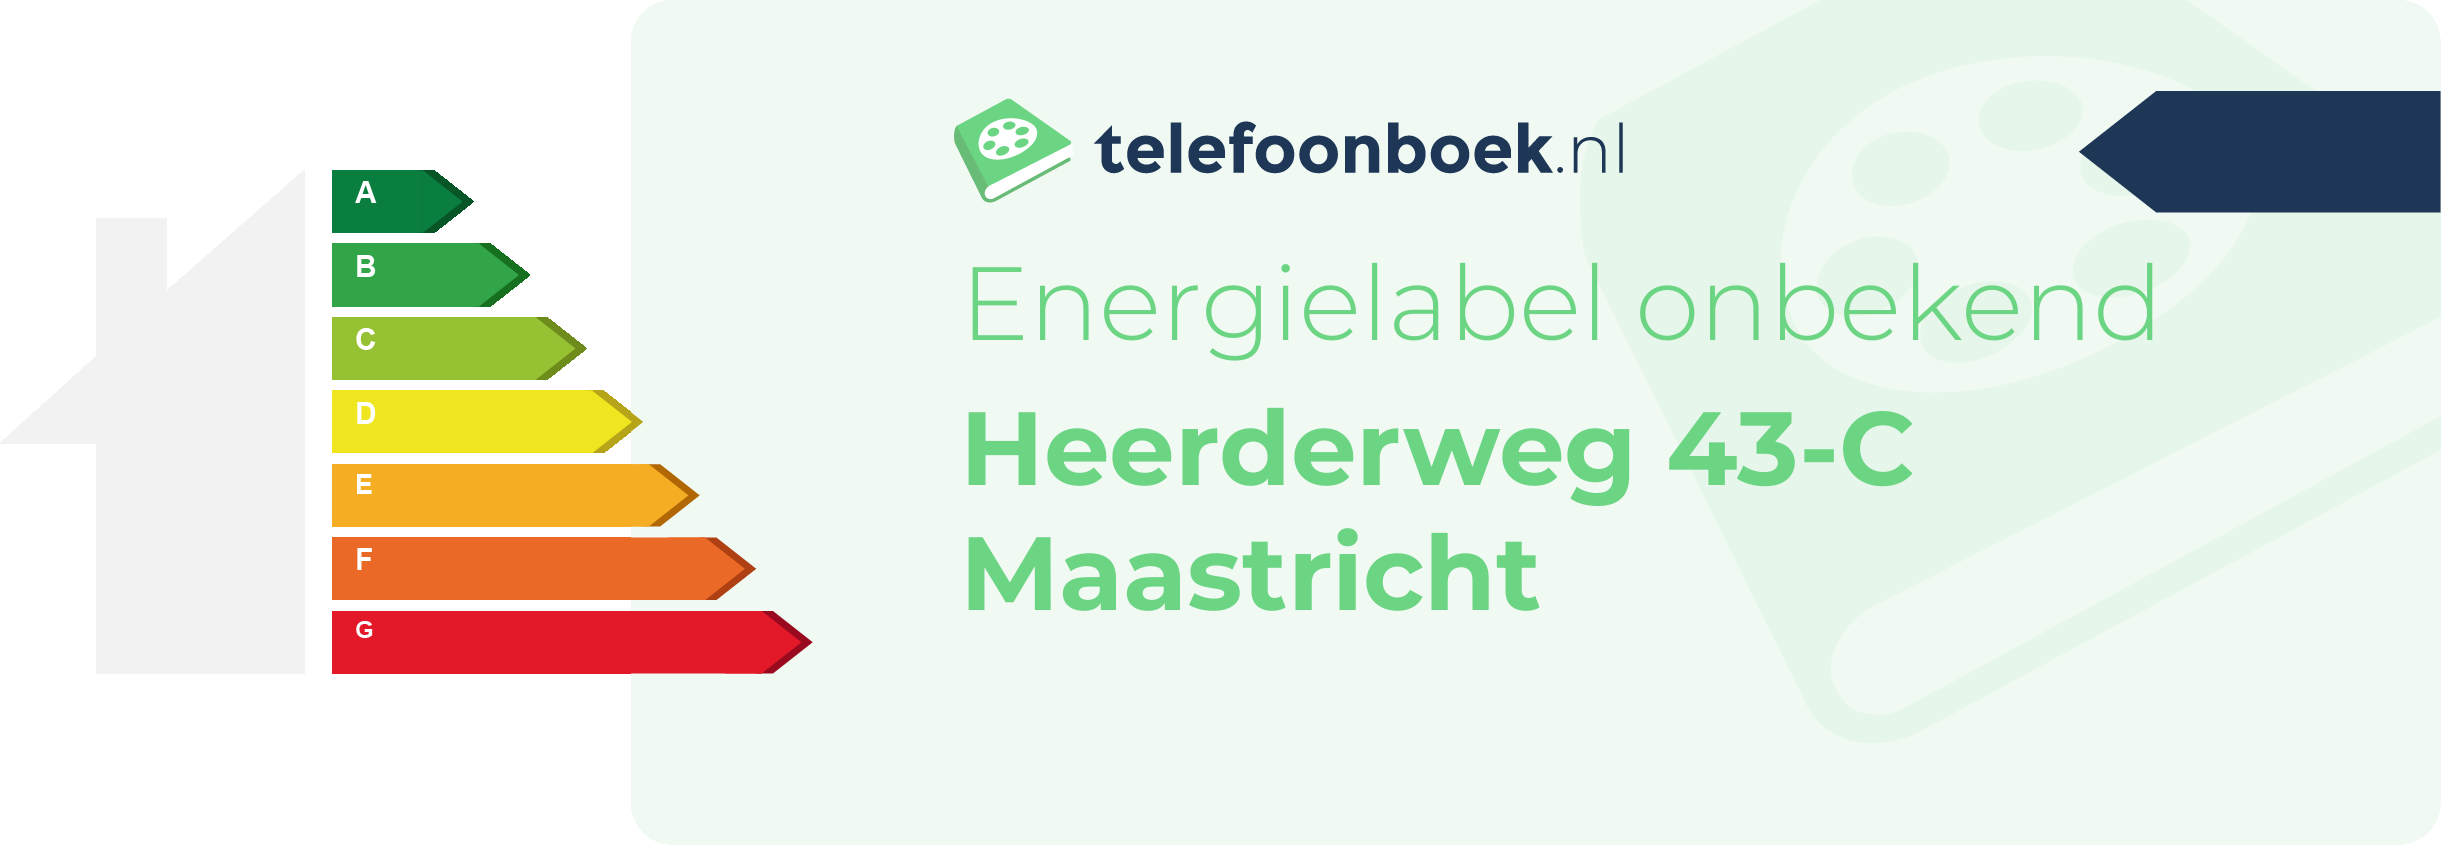 Energielabel Heerderweg 43-C Maastricht